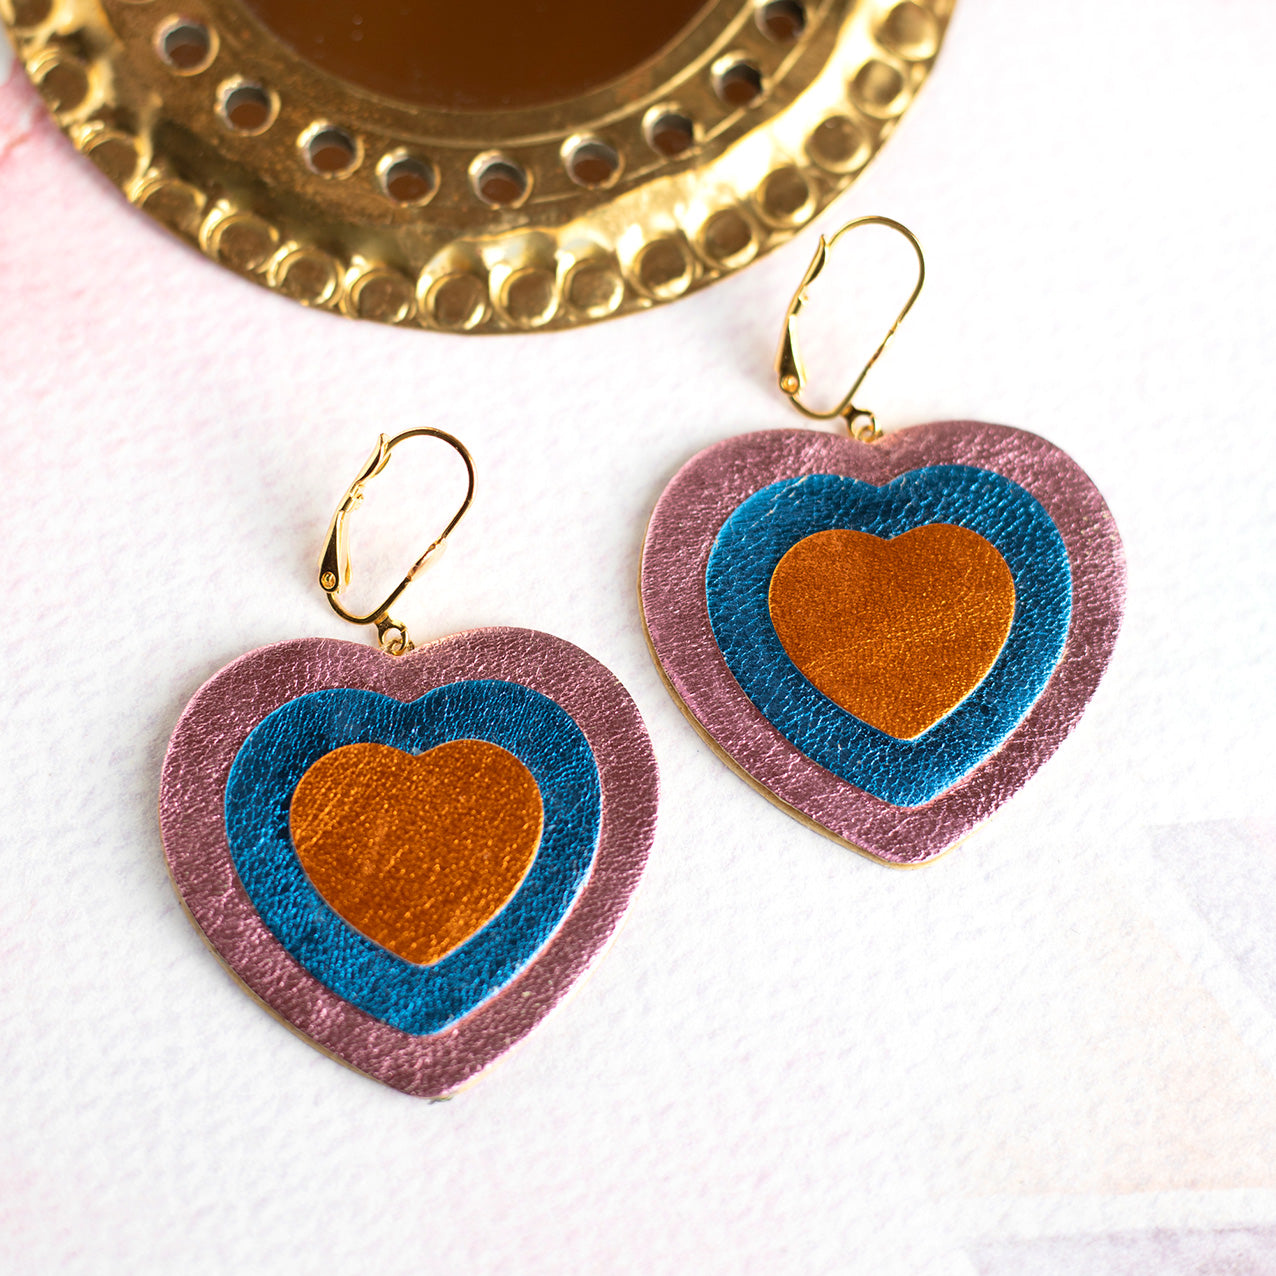 Boucles d'oreilles Double Coeurs - cuir rose, bleu et orange métallisé